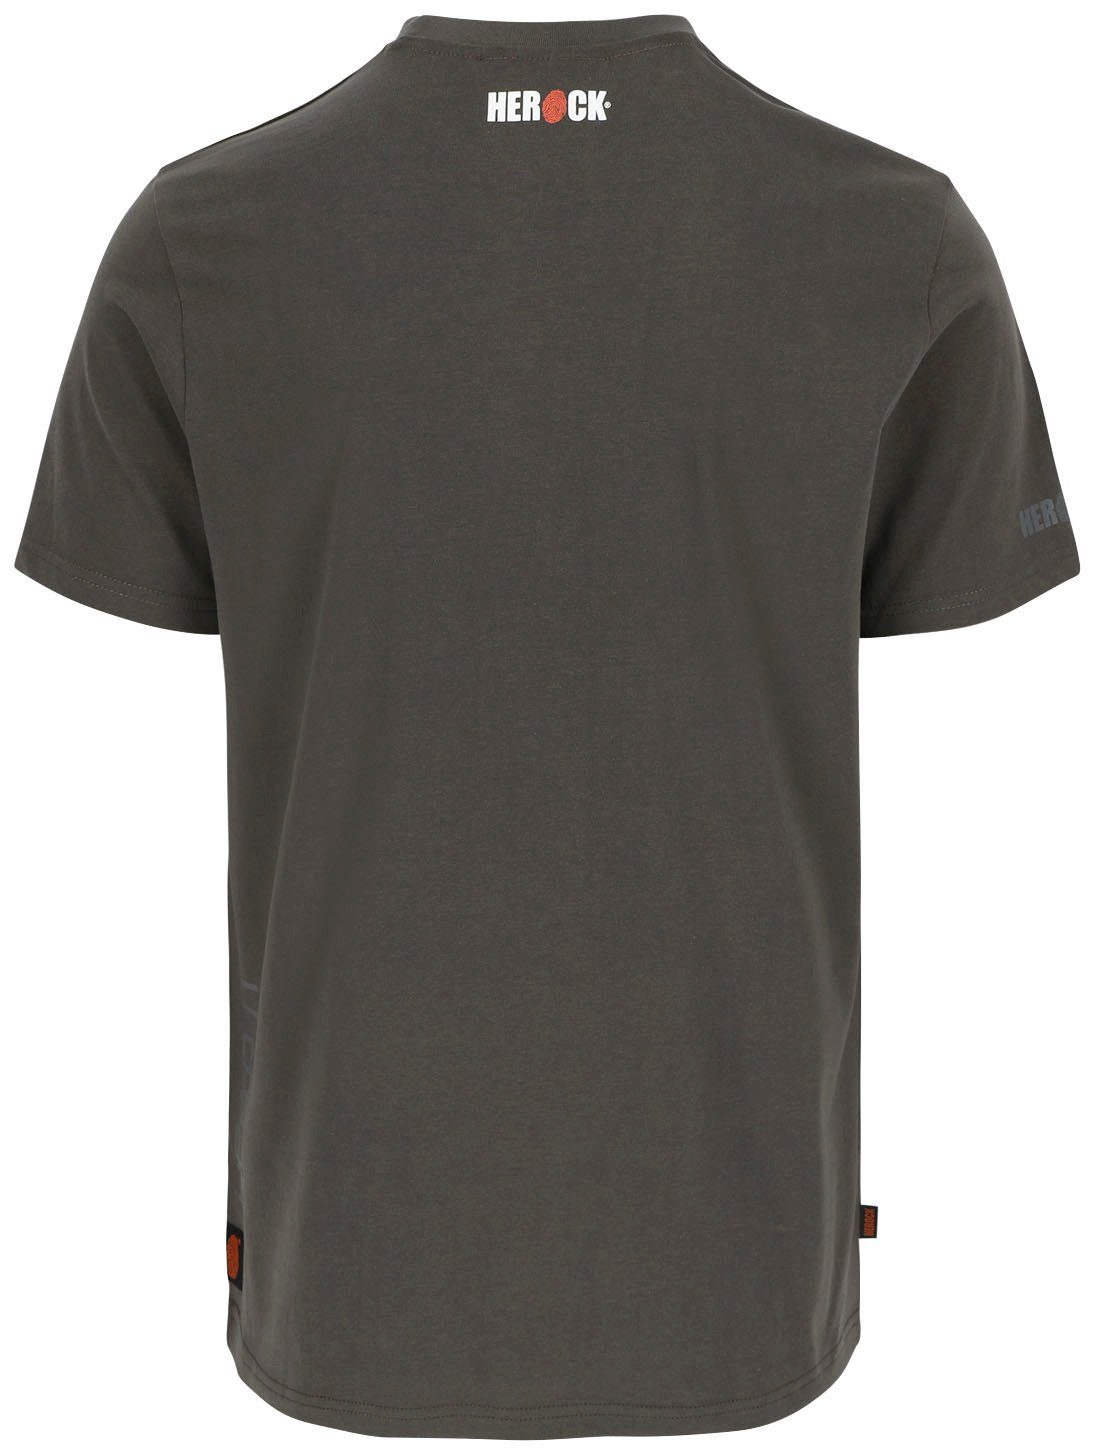 T-Shirt kurze Ärmel Rippstrickkragen Callius Rundhalsausschnitt, T-Shirt Ärmel, Herock grau kurze Herock®-Aufdruck,